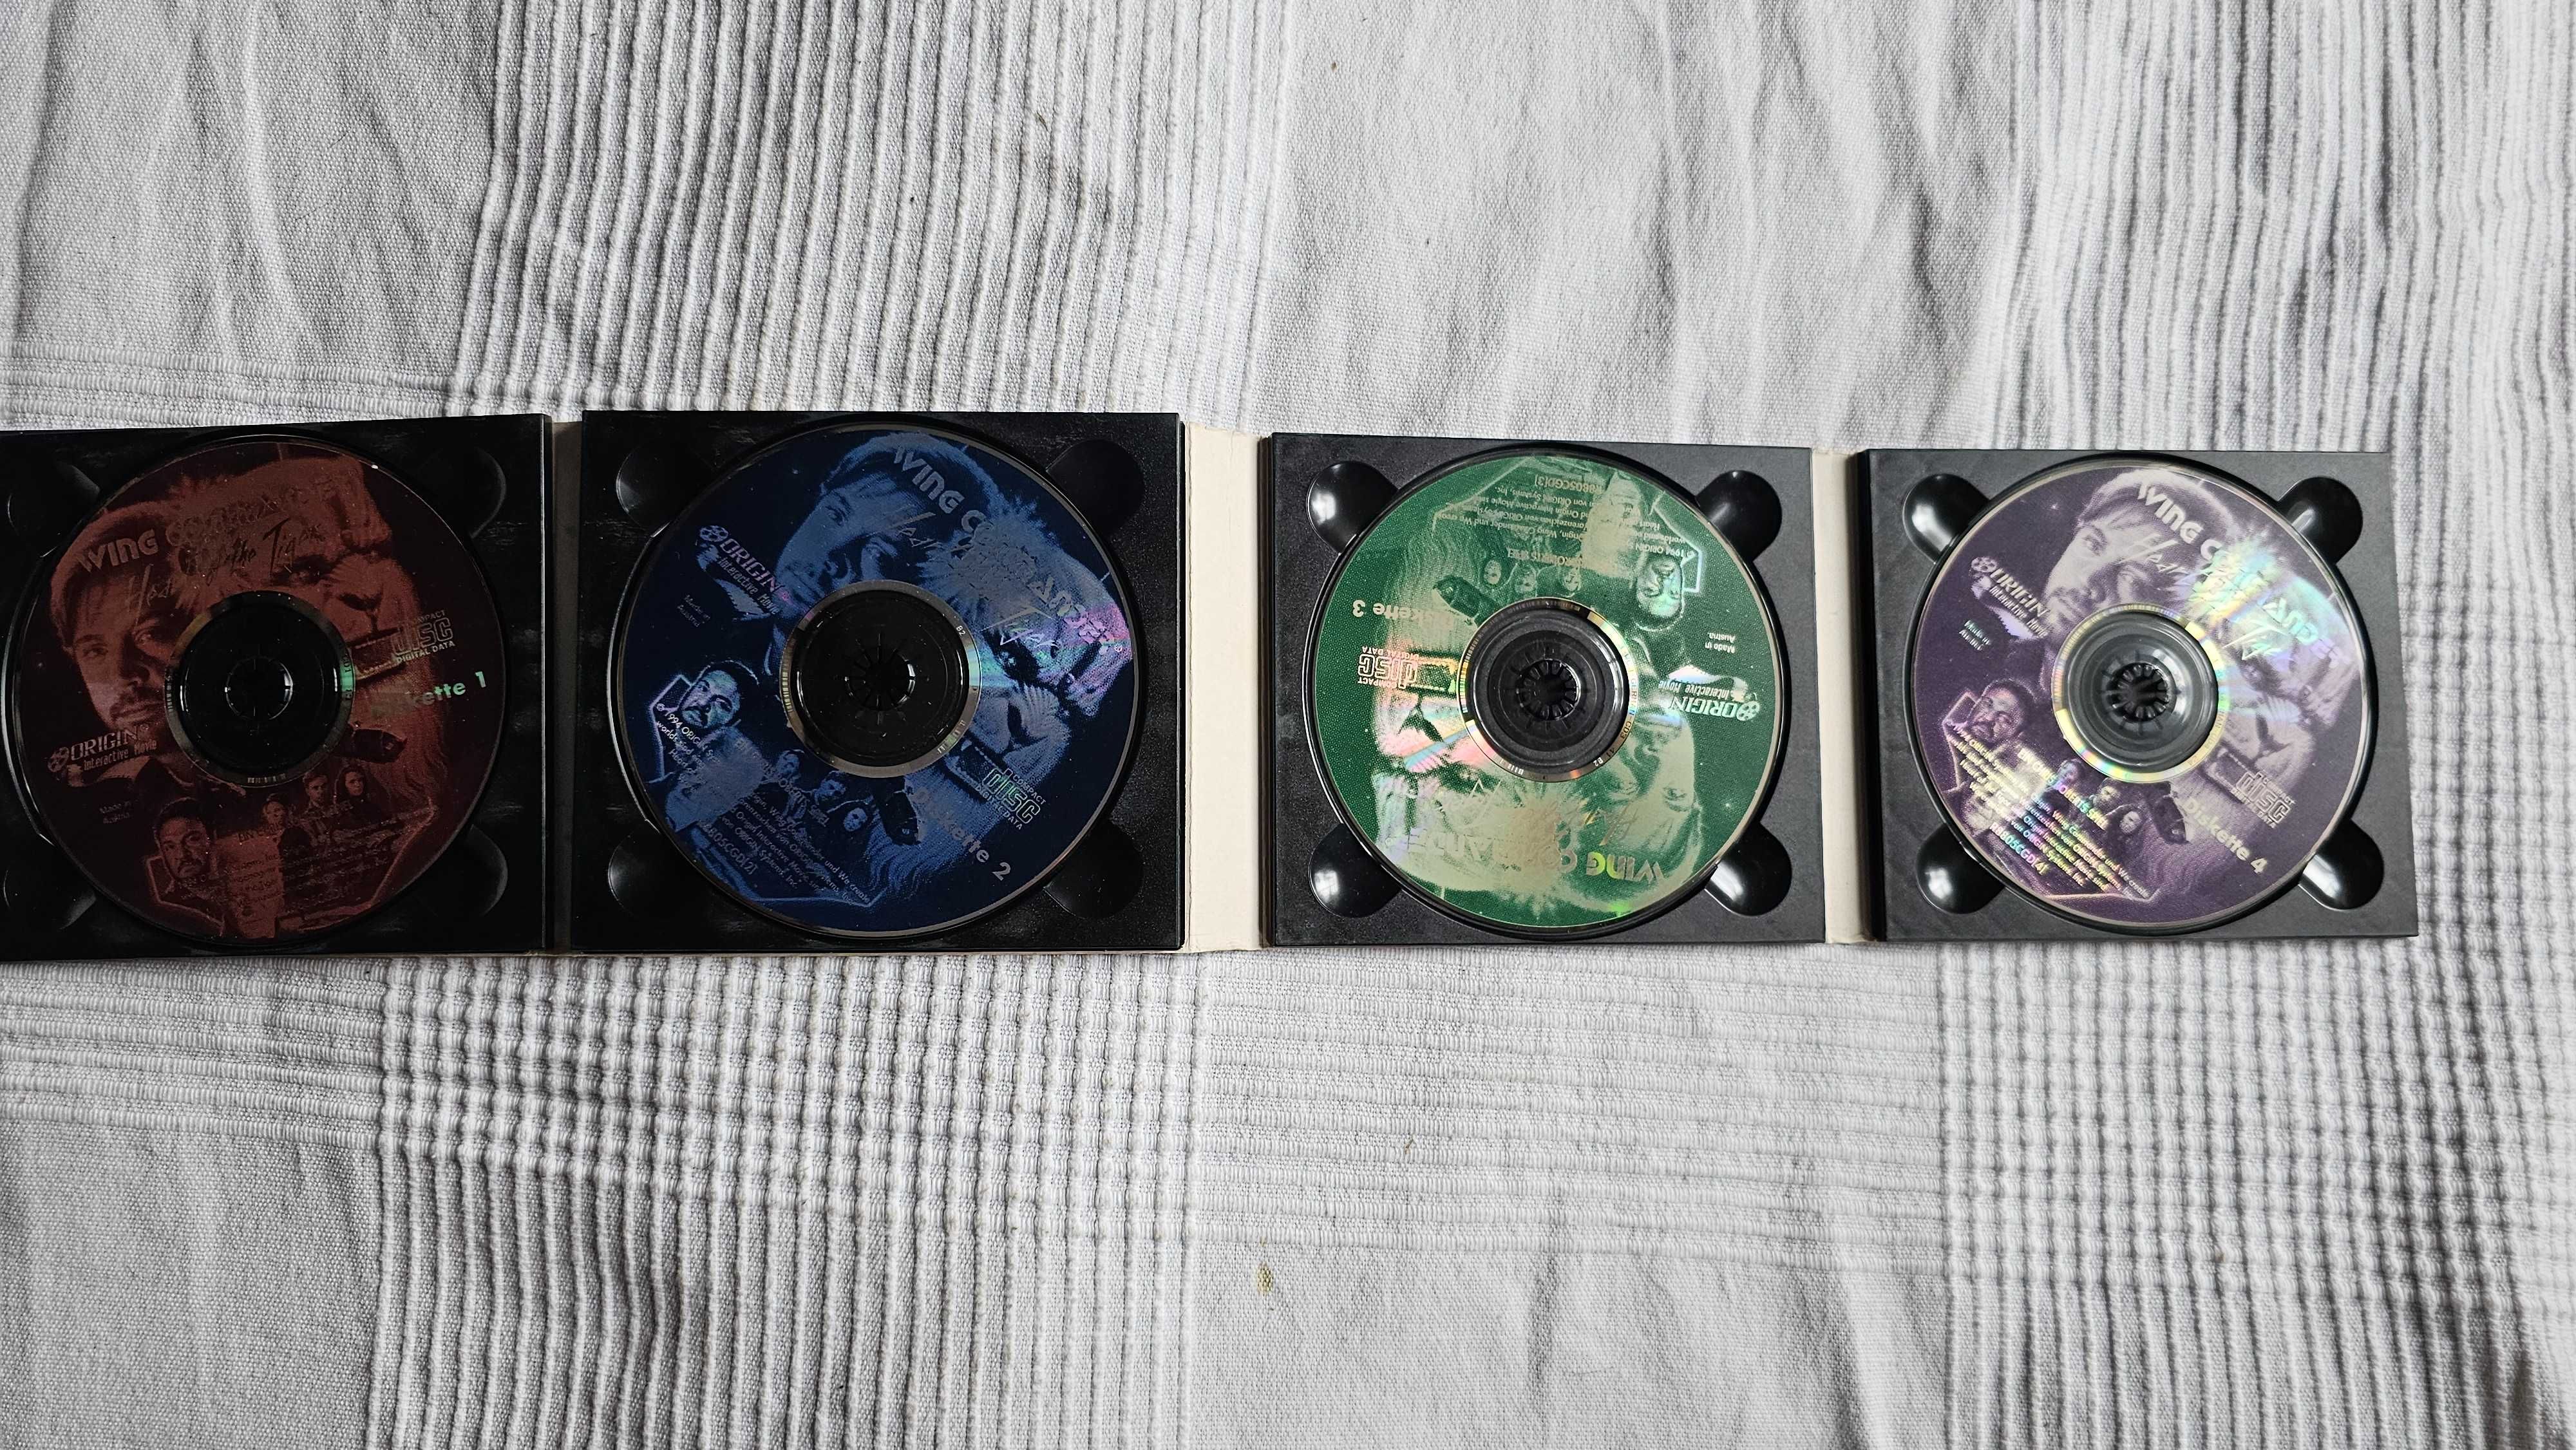 PC CD Wing Commander III deutsch 4 płytowe wydanie